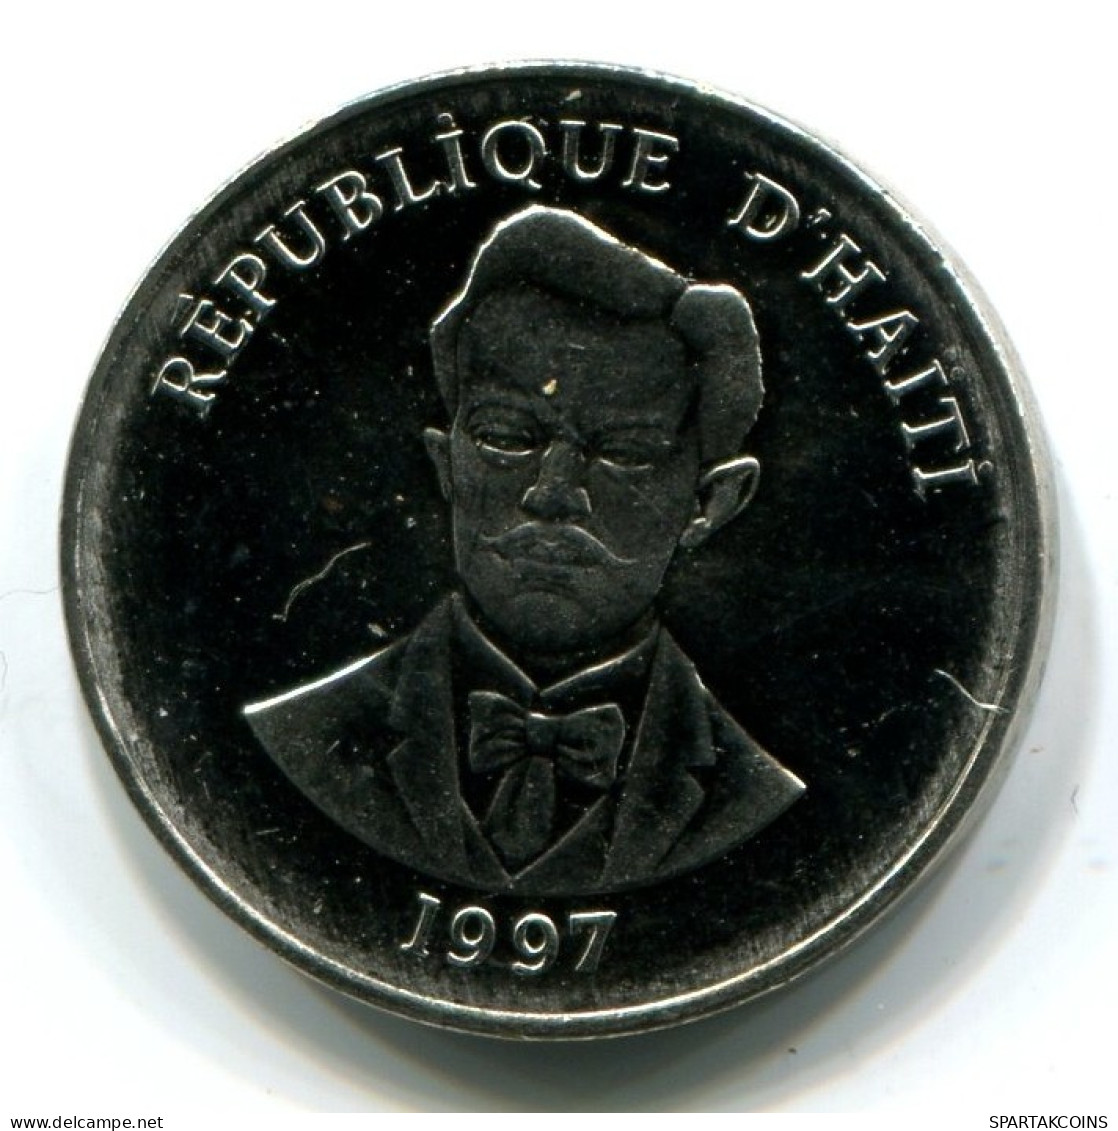 5 CENTIMES 1997 HAITÍ HAITI UNC Moneda #W11404.E.A - Haití